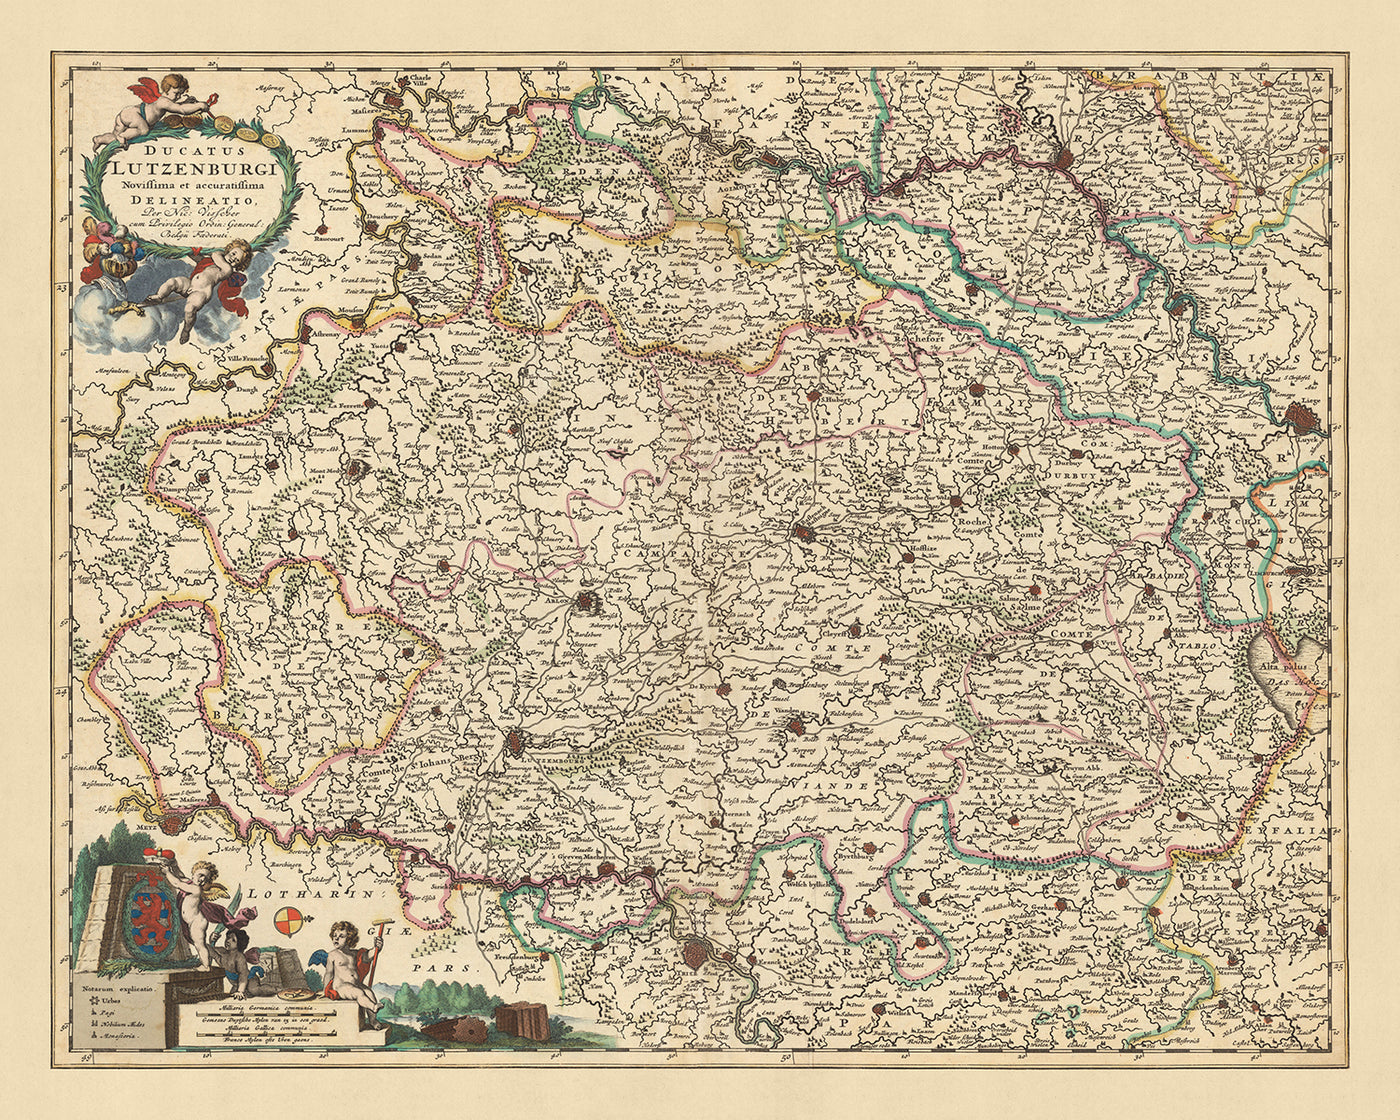 Mapa antiguo del Ducado de Luxemburgo por Visscher, 1690: Lieja, Namur, Metz, Trier, Parque Regional de las Ardenas